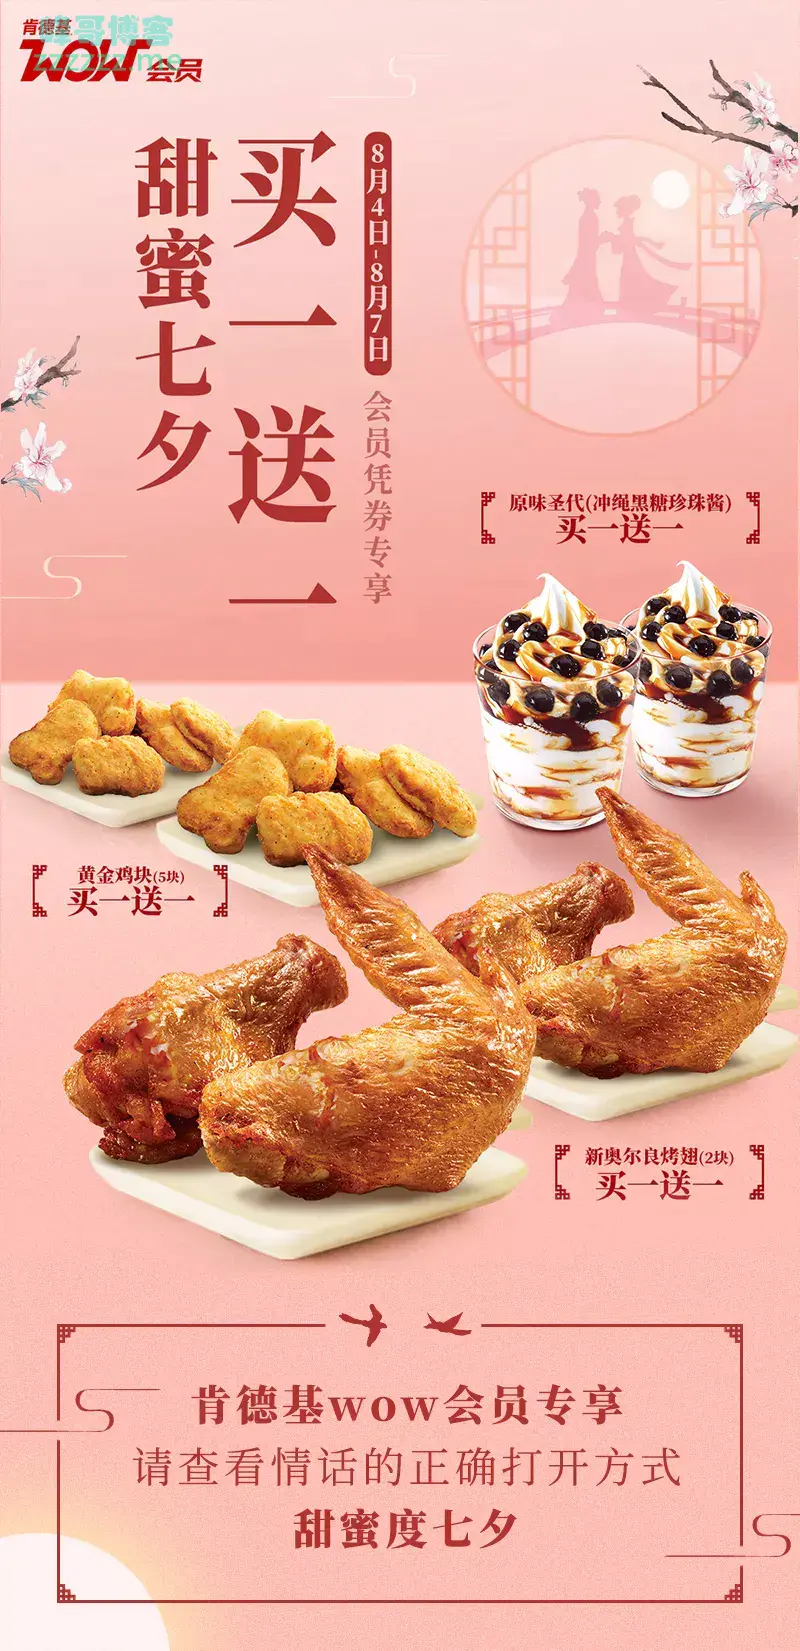 肯德基KFC 甜蜜过七夕活动 黄金鸡块、奥尔良烤翅、圣代 买一送一！